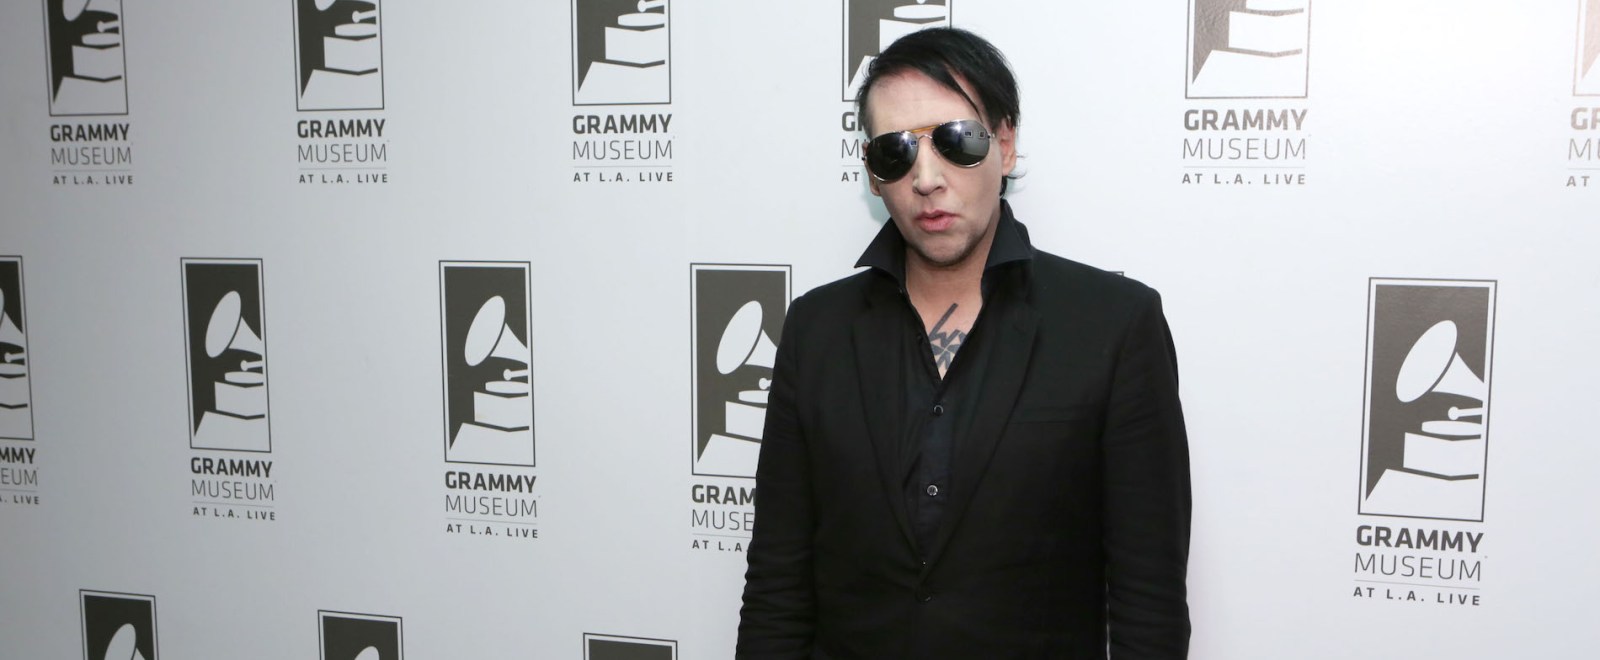 Marilyn Manson Grammy Museum Grammys 2015